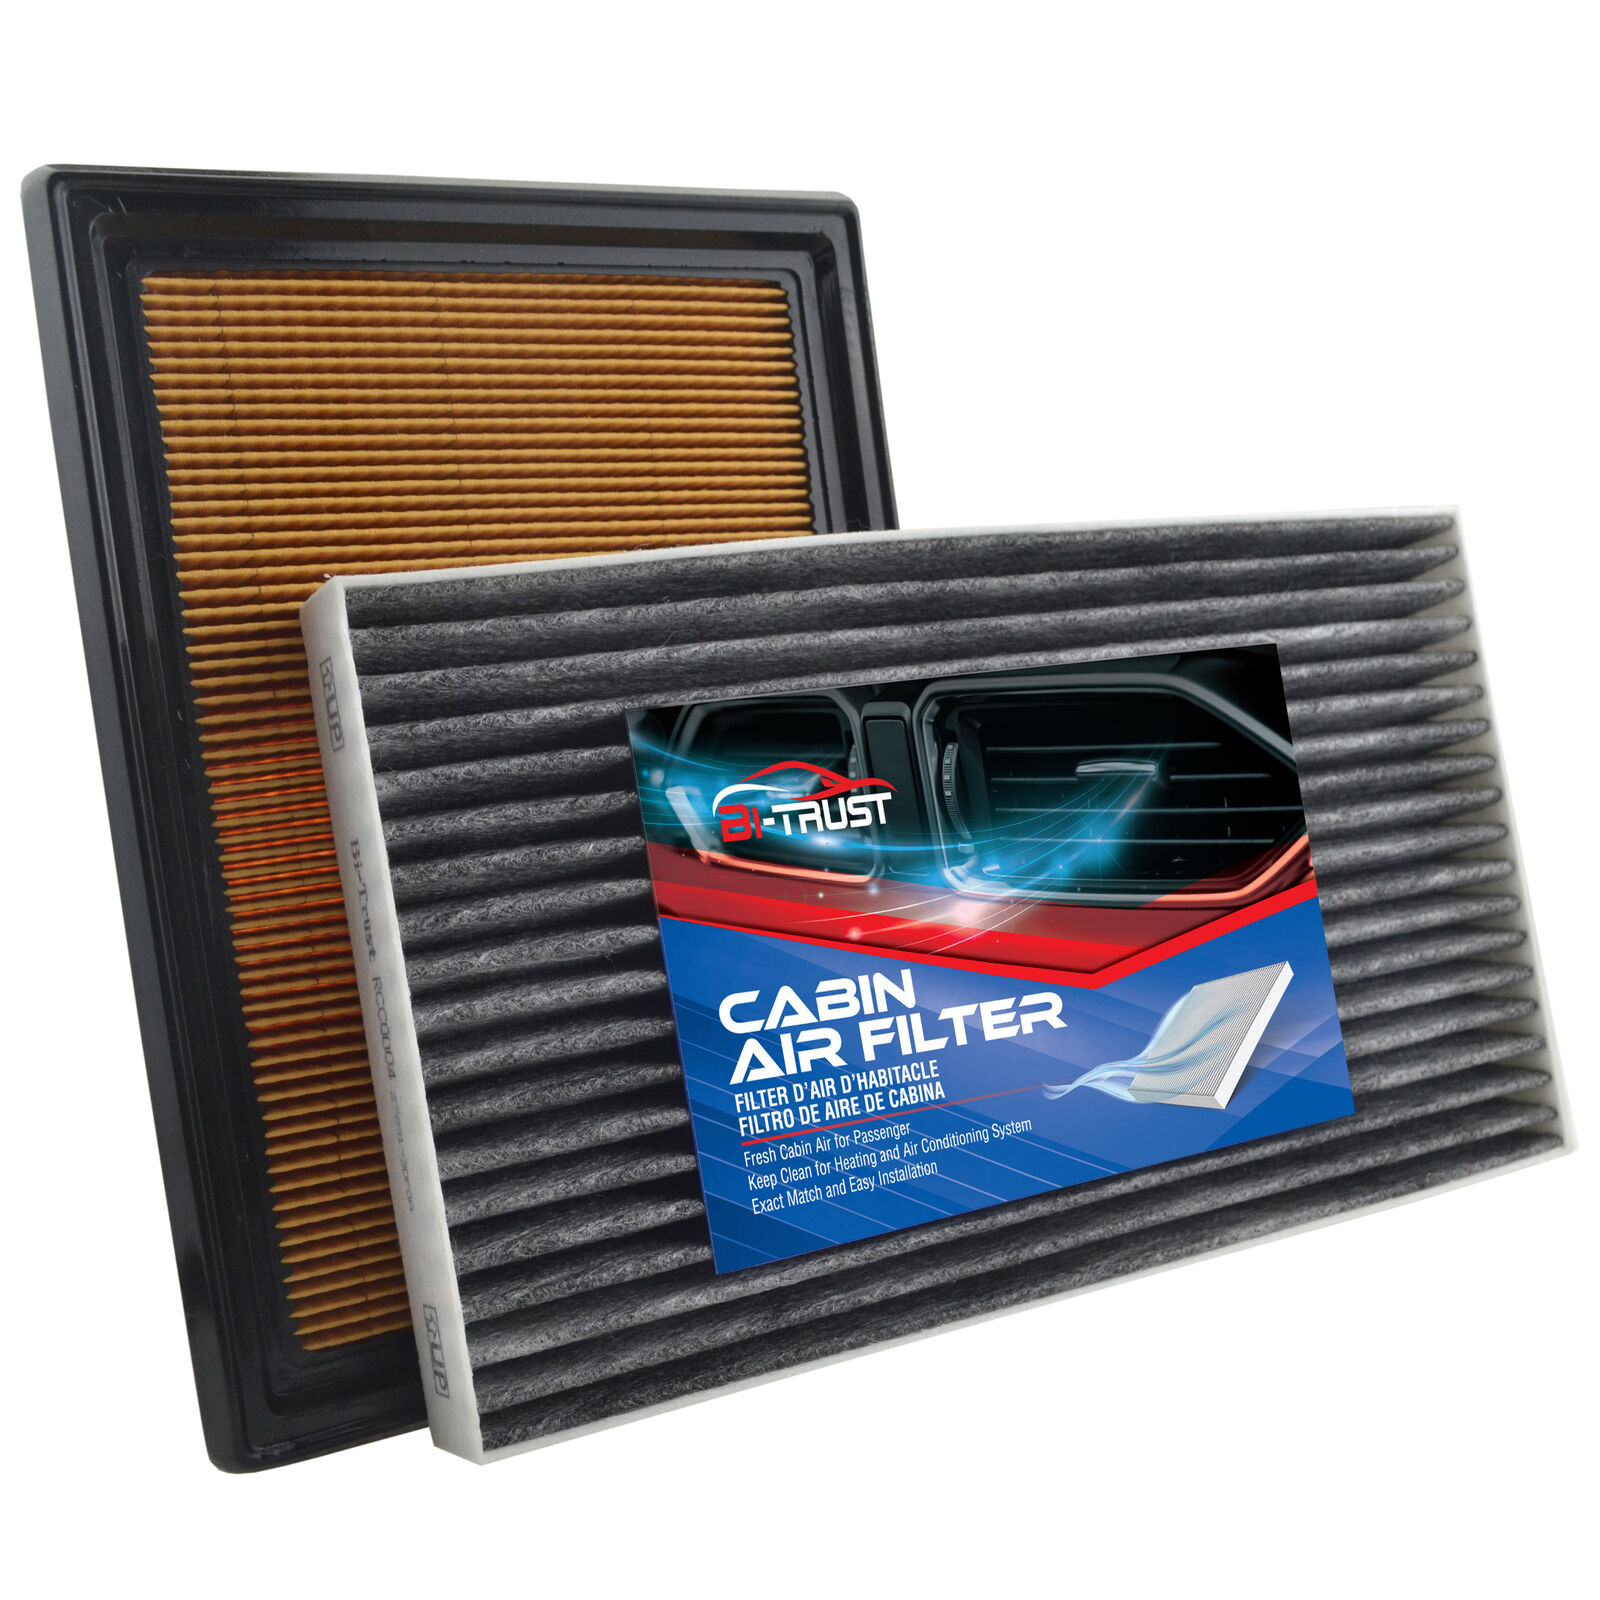 Engine & Cabin Air Filter Combo Set for 2013-2017 Nissan Sentra 2011-2017 Juke